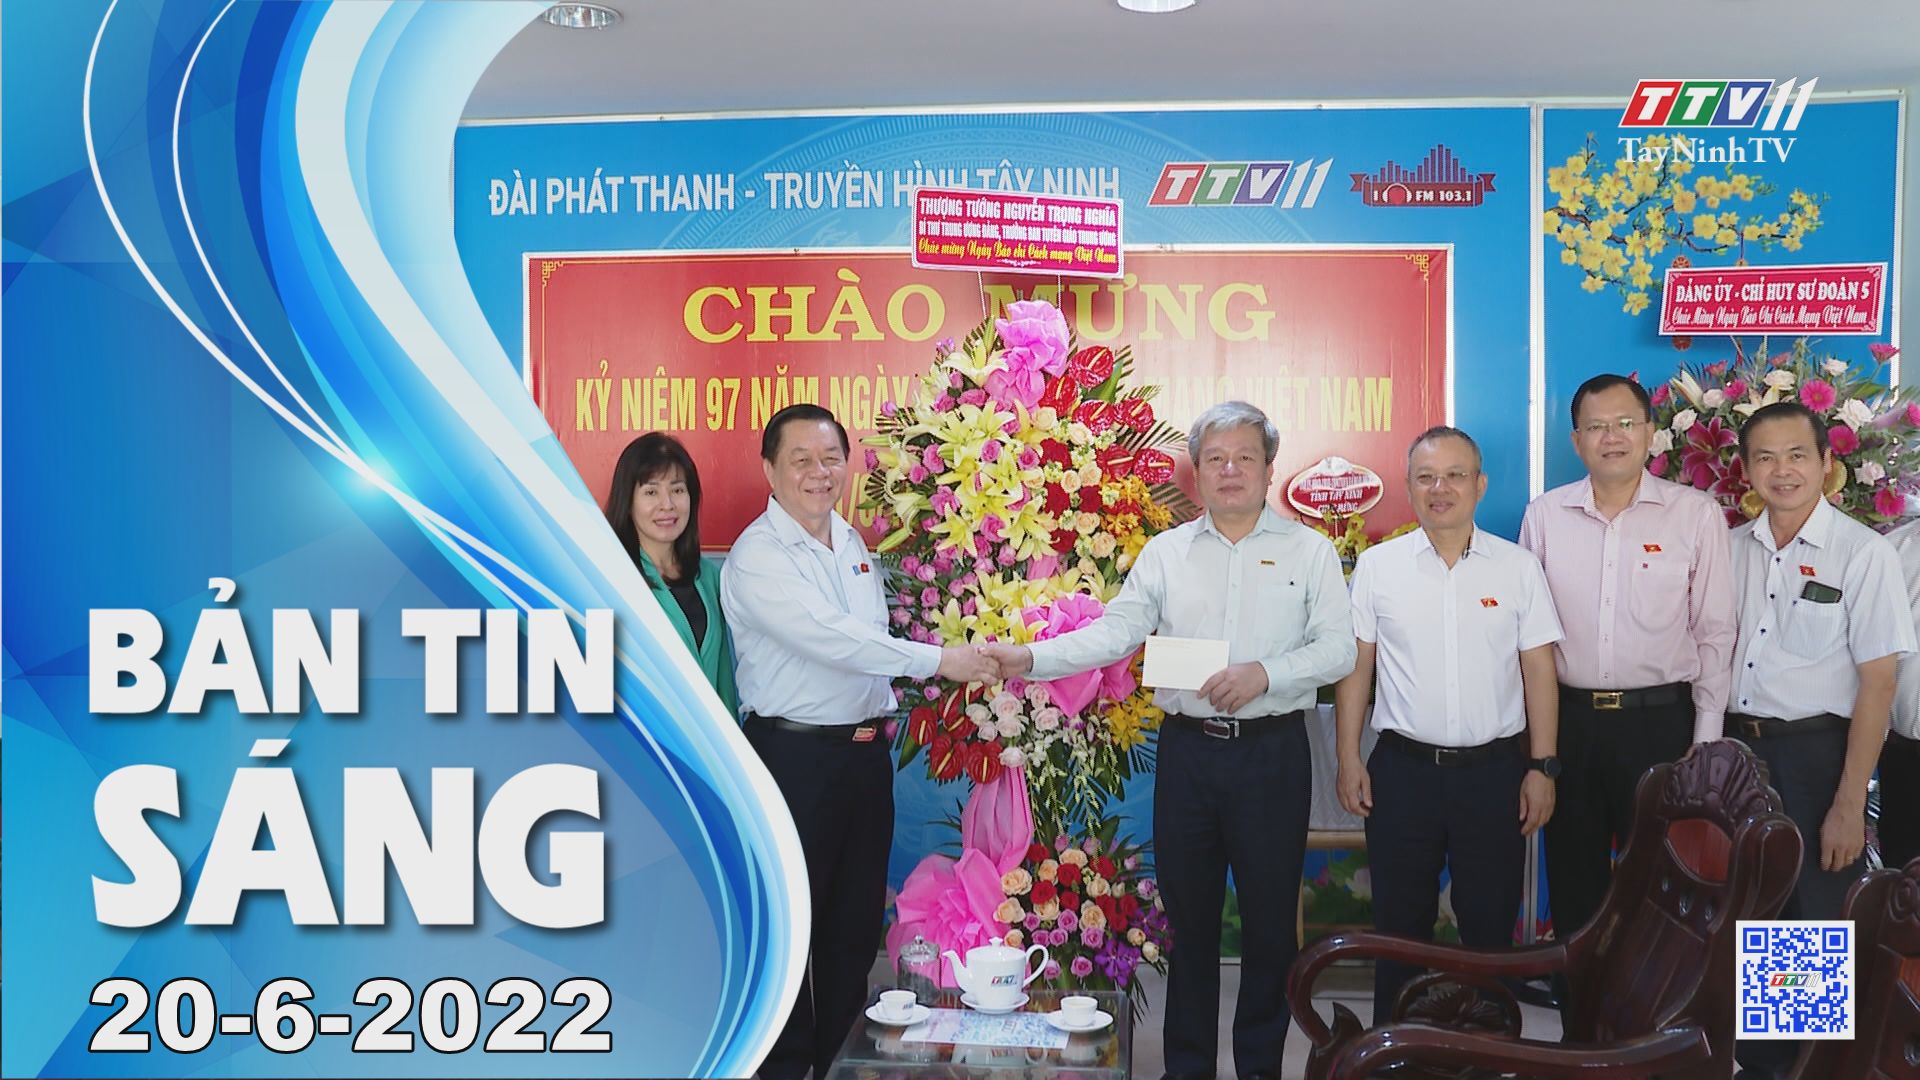 Bản tin sáng 20-6-2022 | Tin tức hôm nay | TayNinhTV